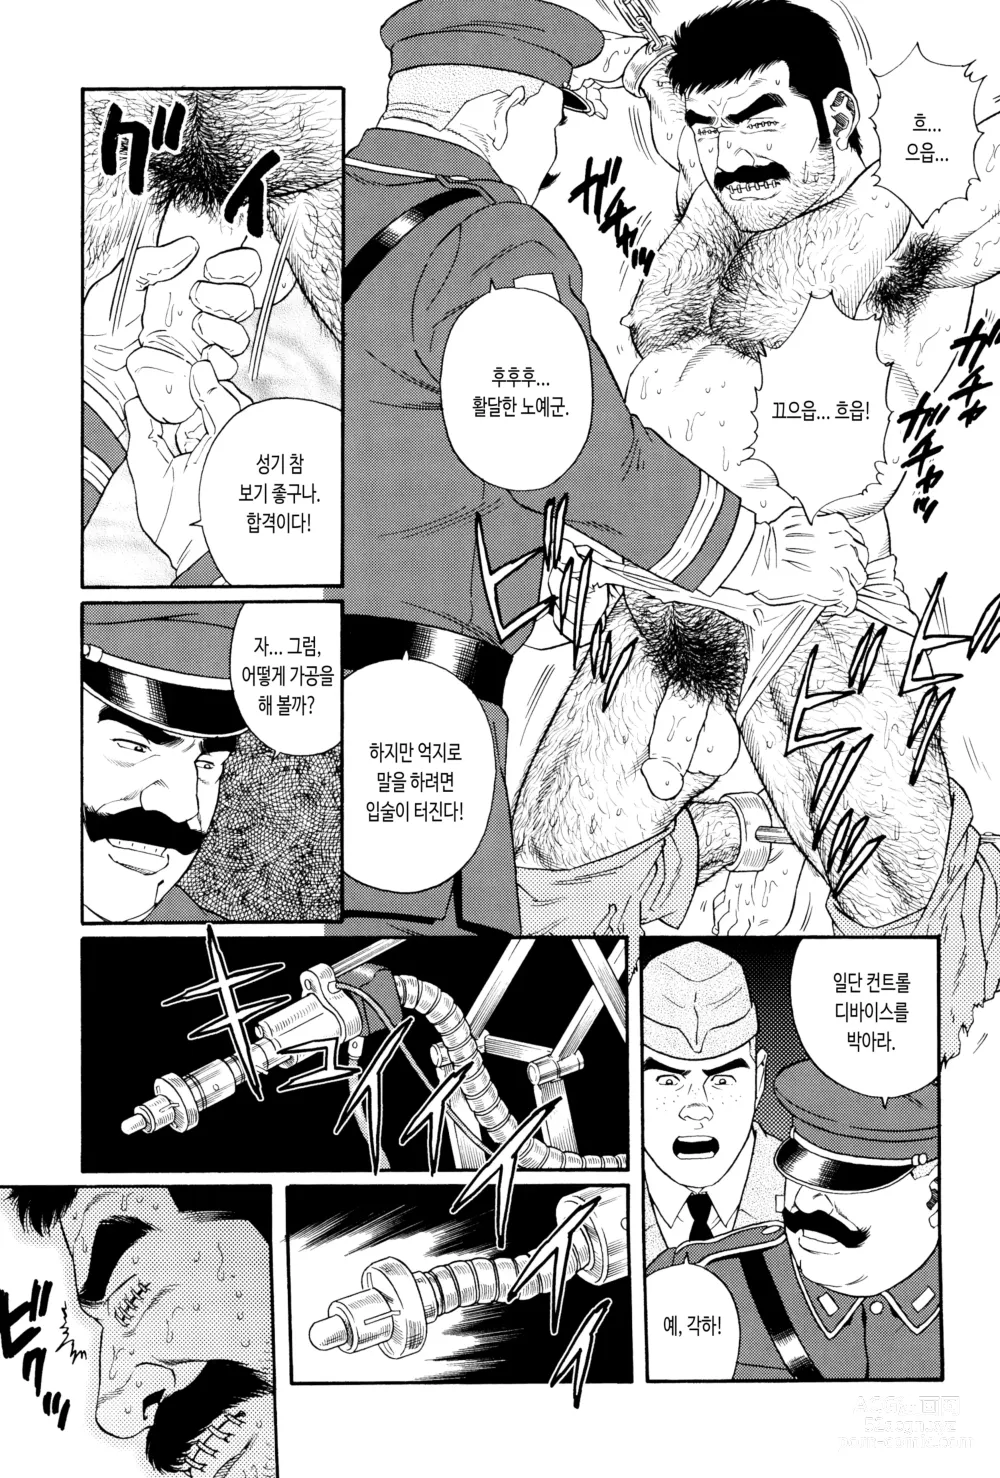 Page 5 of manga ZENITH